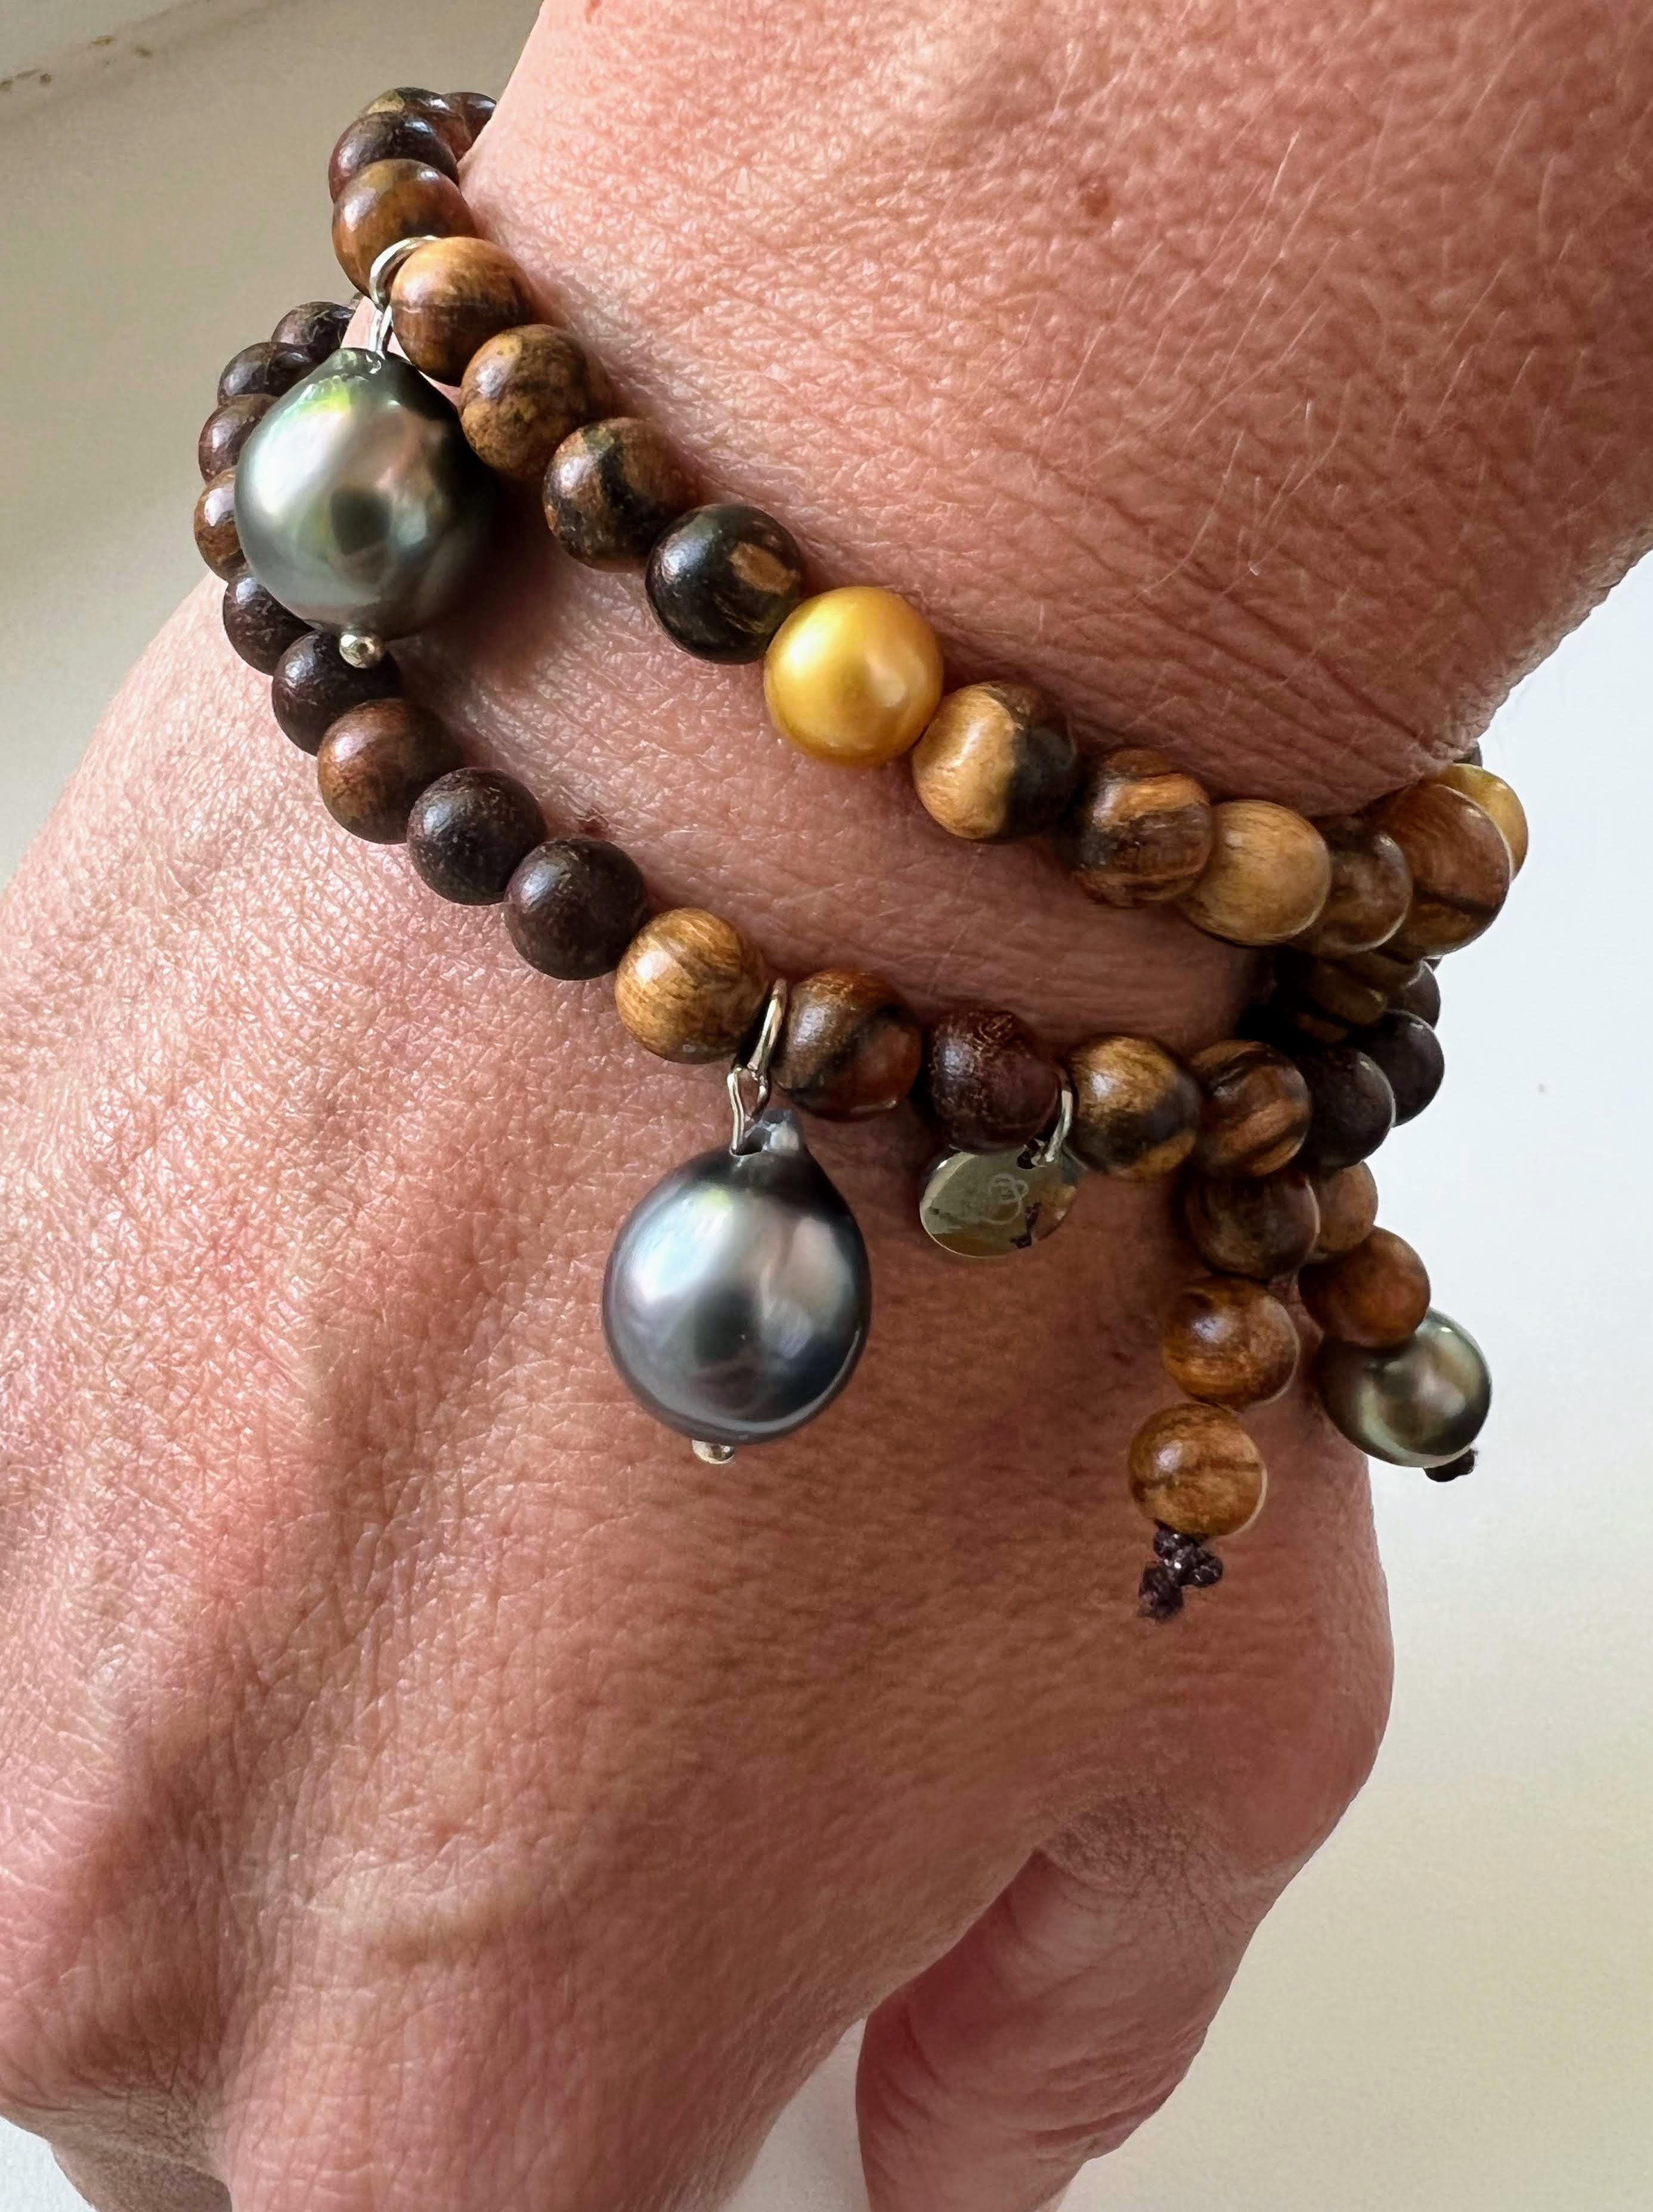 Ce bijou s'inspire des bracelets de prière bouddhistes. Il peut être porté comme un collier court ou enroulé autour du poignet. Il est captivant avec ses petites intrigues et ses perles d'or rares. Les perles de Tahiti pendantes de forme baroque